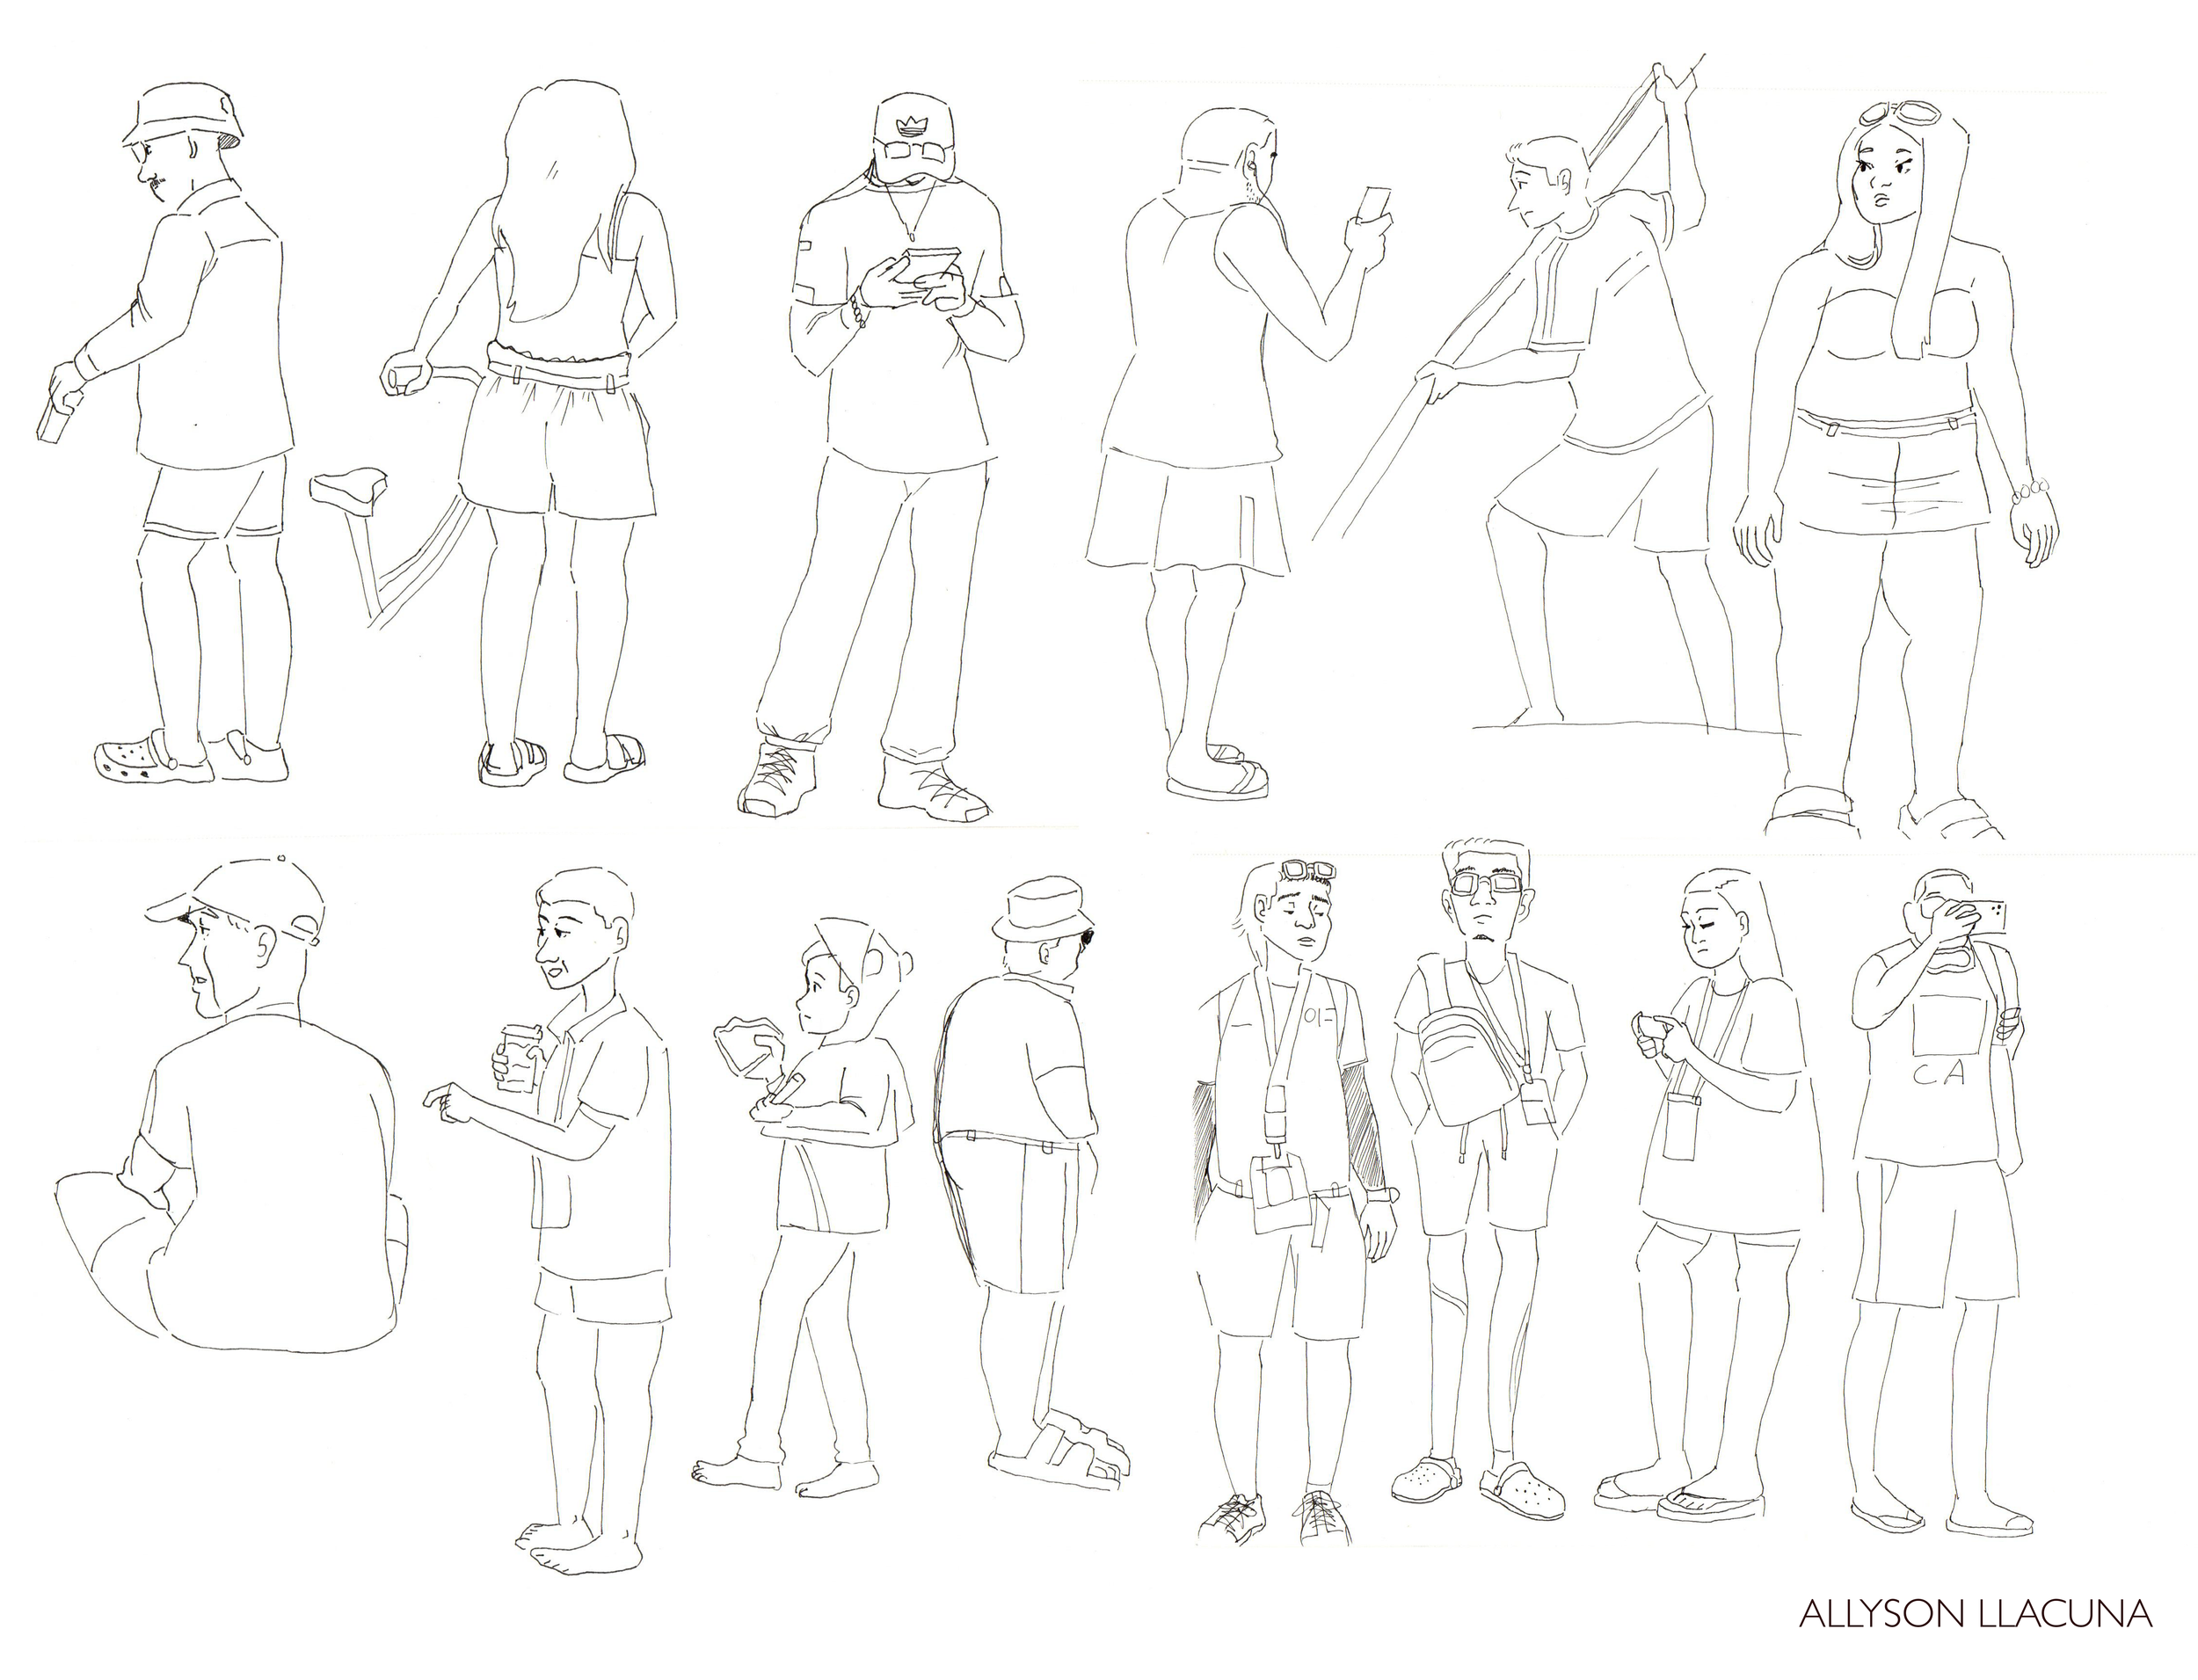 People sketch 4.png